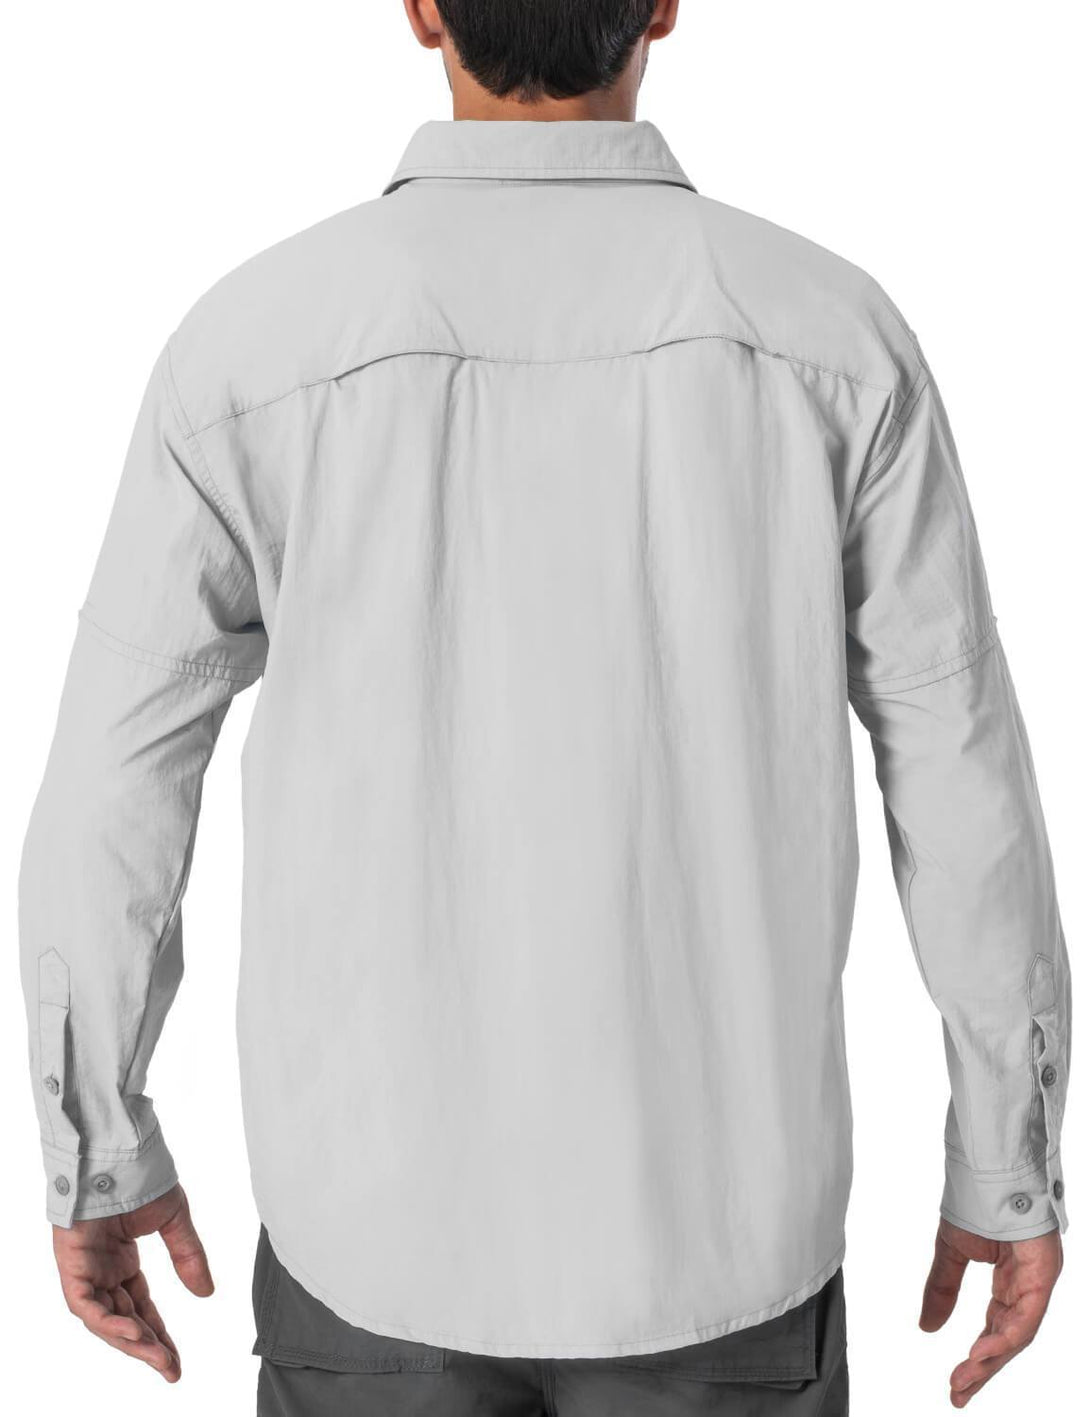 MSO fishing - UPF 50 Sundown Shirt